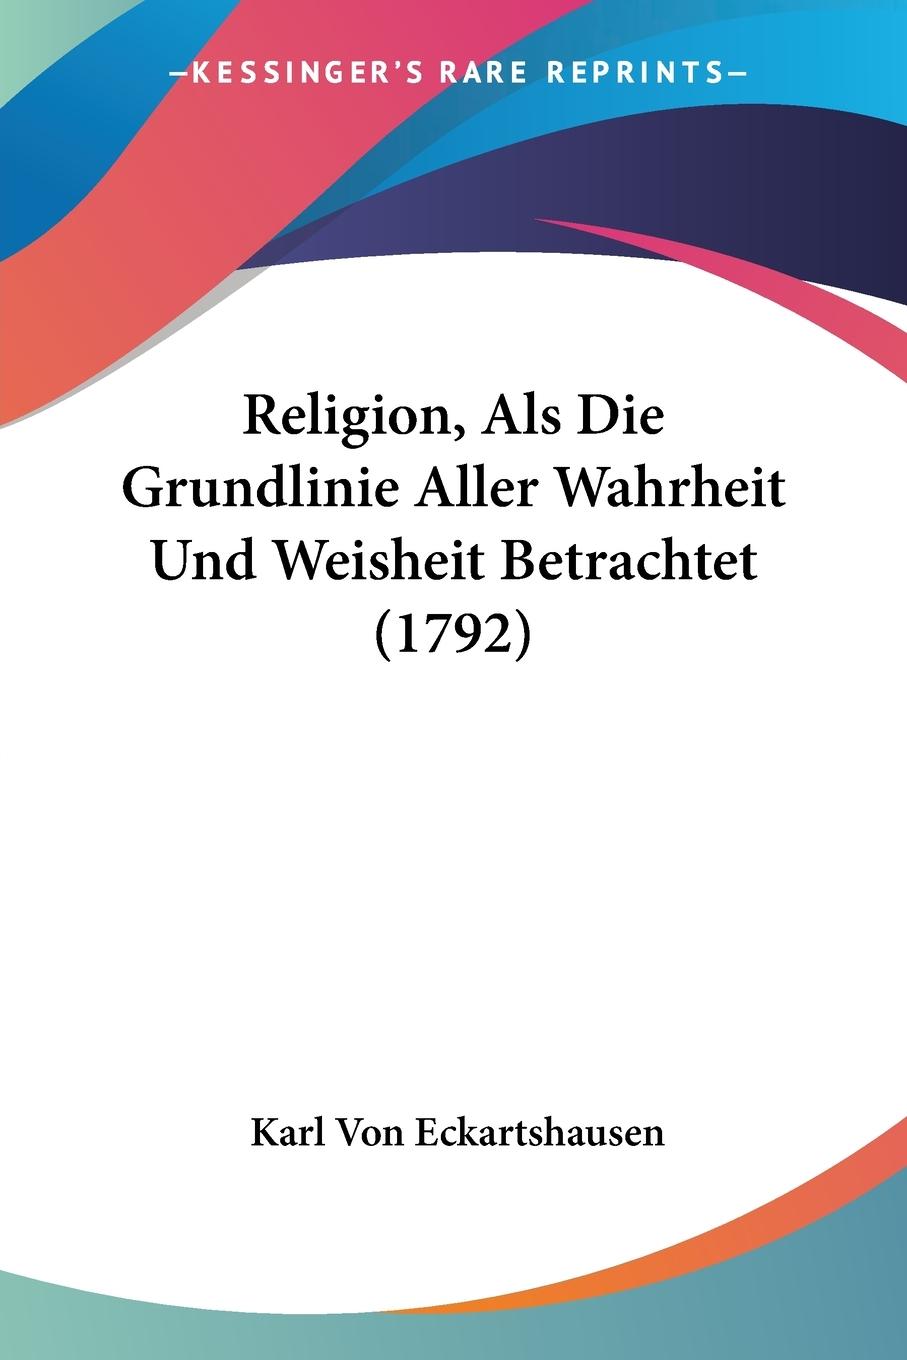 Religion, Als Die Grundlinie Aller Wahrheit Und Weisheit Betrachtet (1792) - Eckartshausen, Karl Von